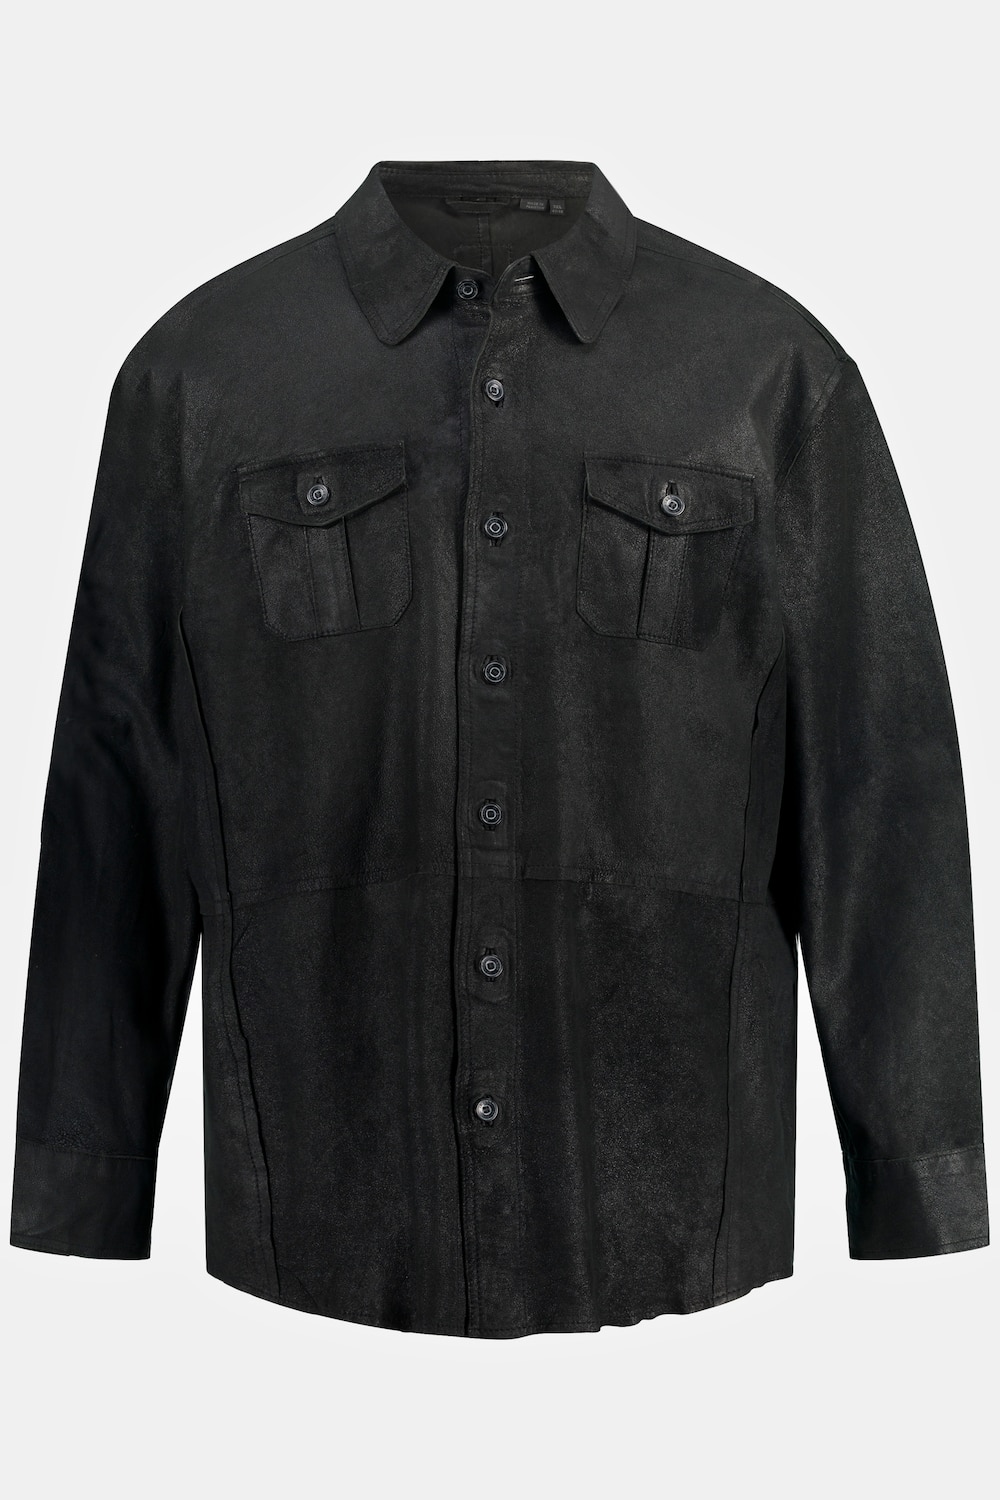 Lederhemd, Große Größen, Herren, schwarz, Größe: 6XL, Leder, JP1880 product